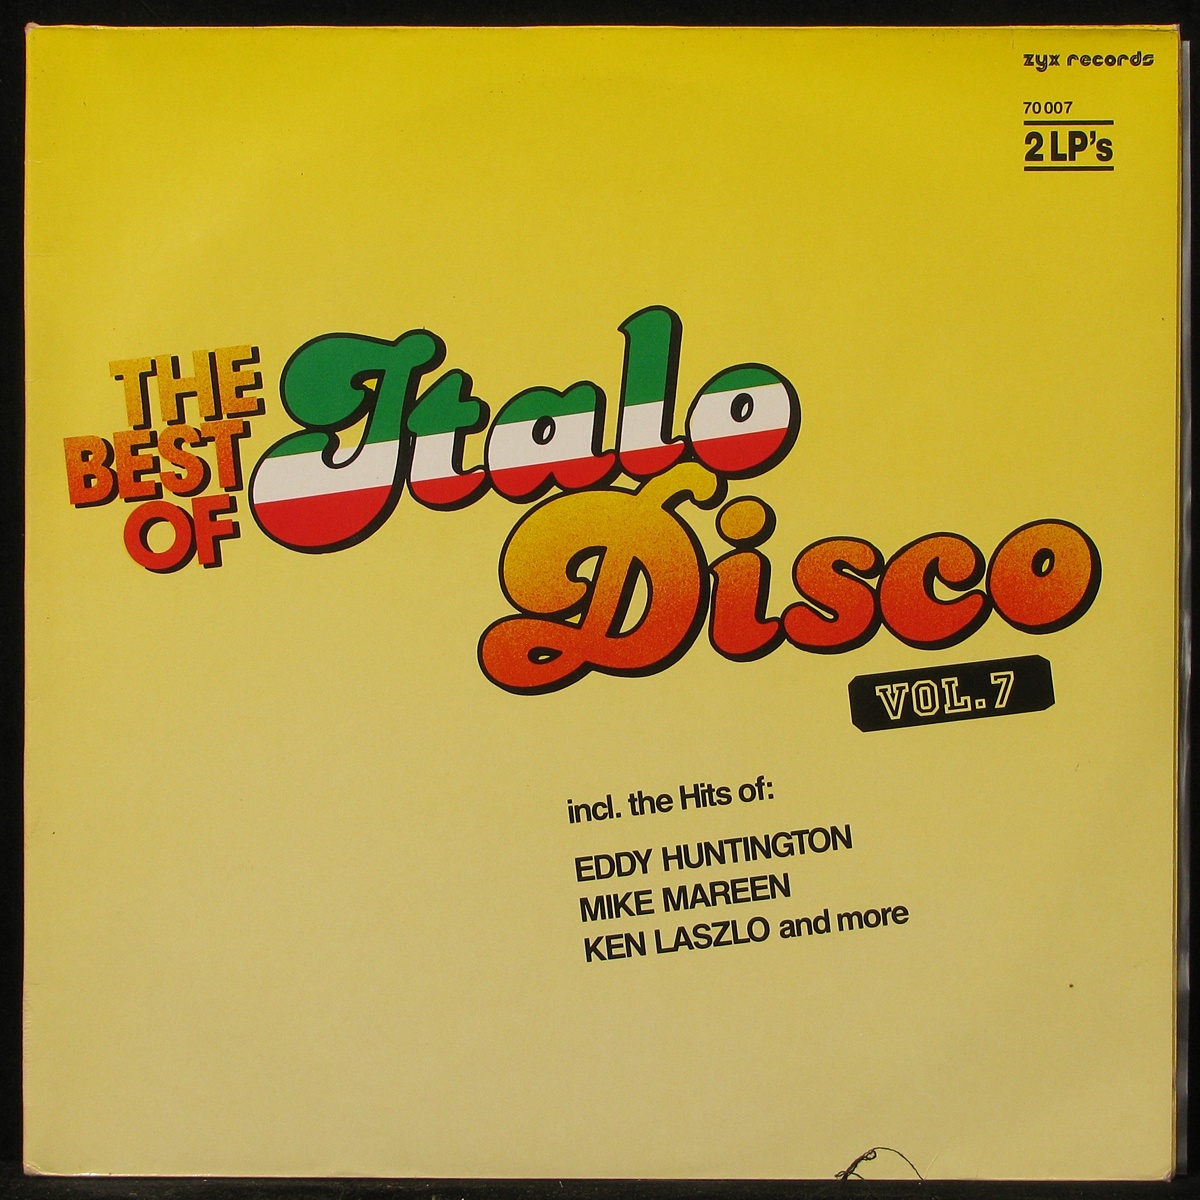 Альбом итало диско. The best of Italo Disco Hits, Vol. 7 LP. The best of Italo Disco обложки. Итало диско итало диско. Бест итало диско.